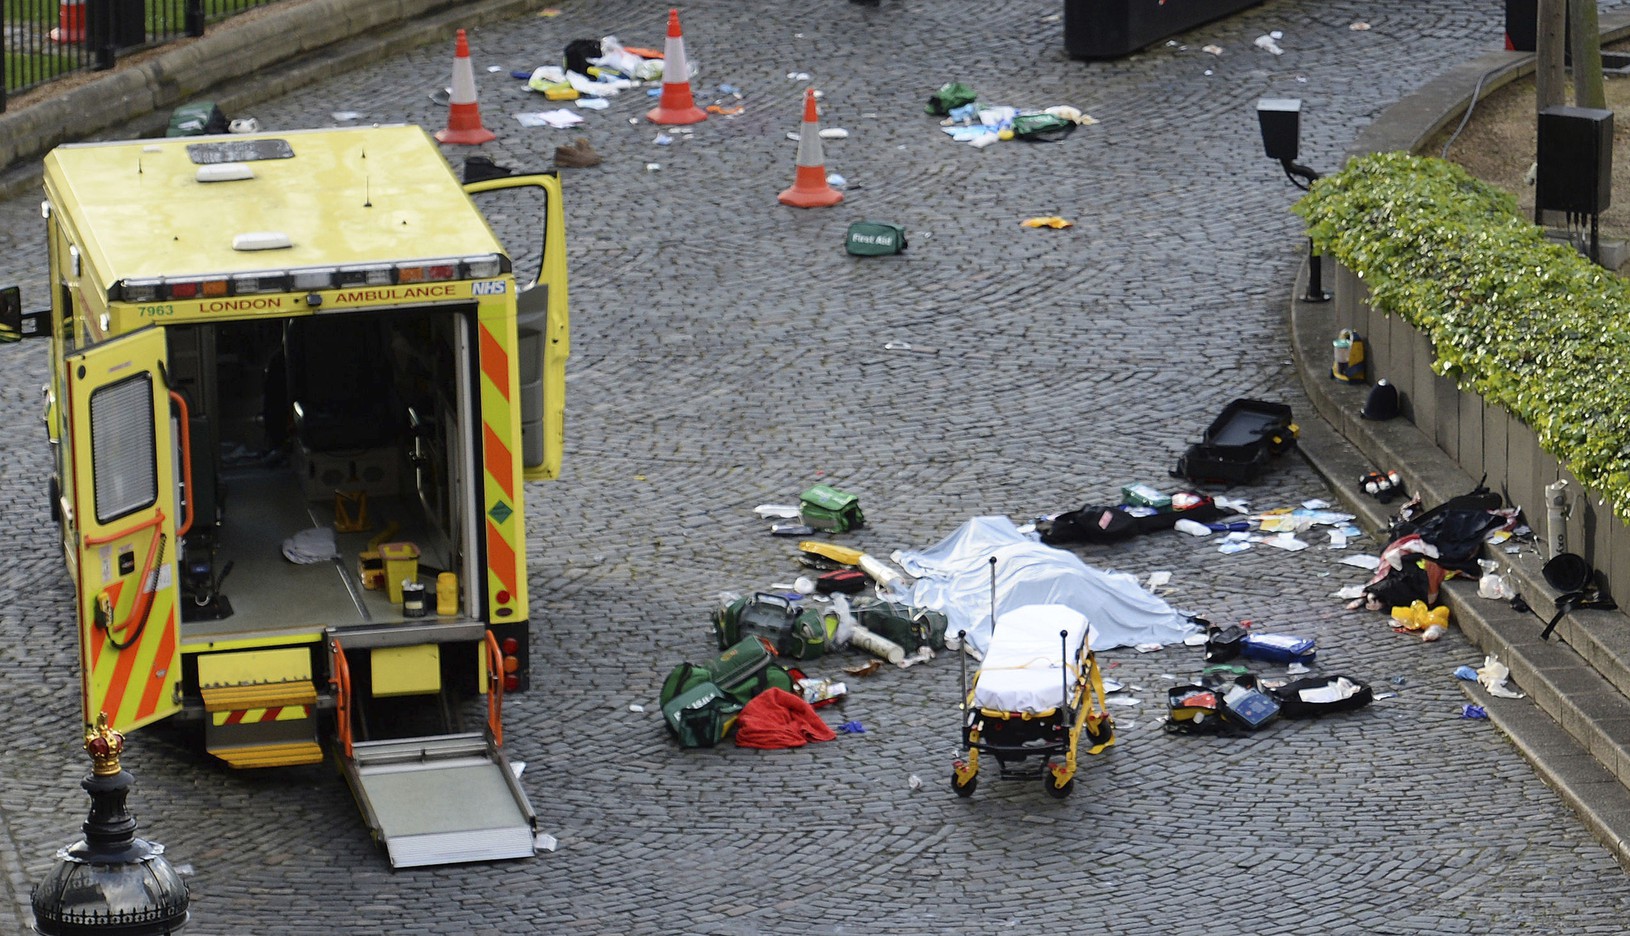 Teroristický útok v Londýne